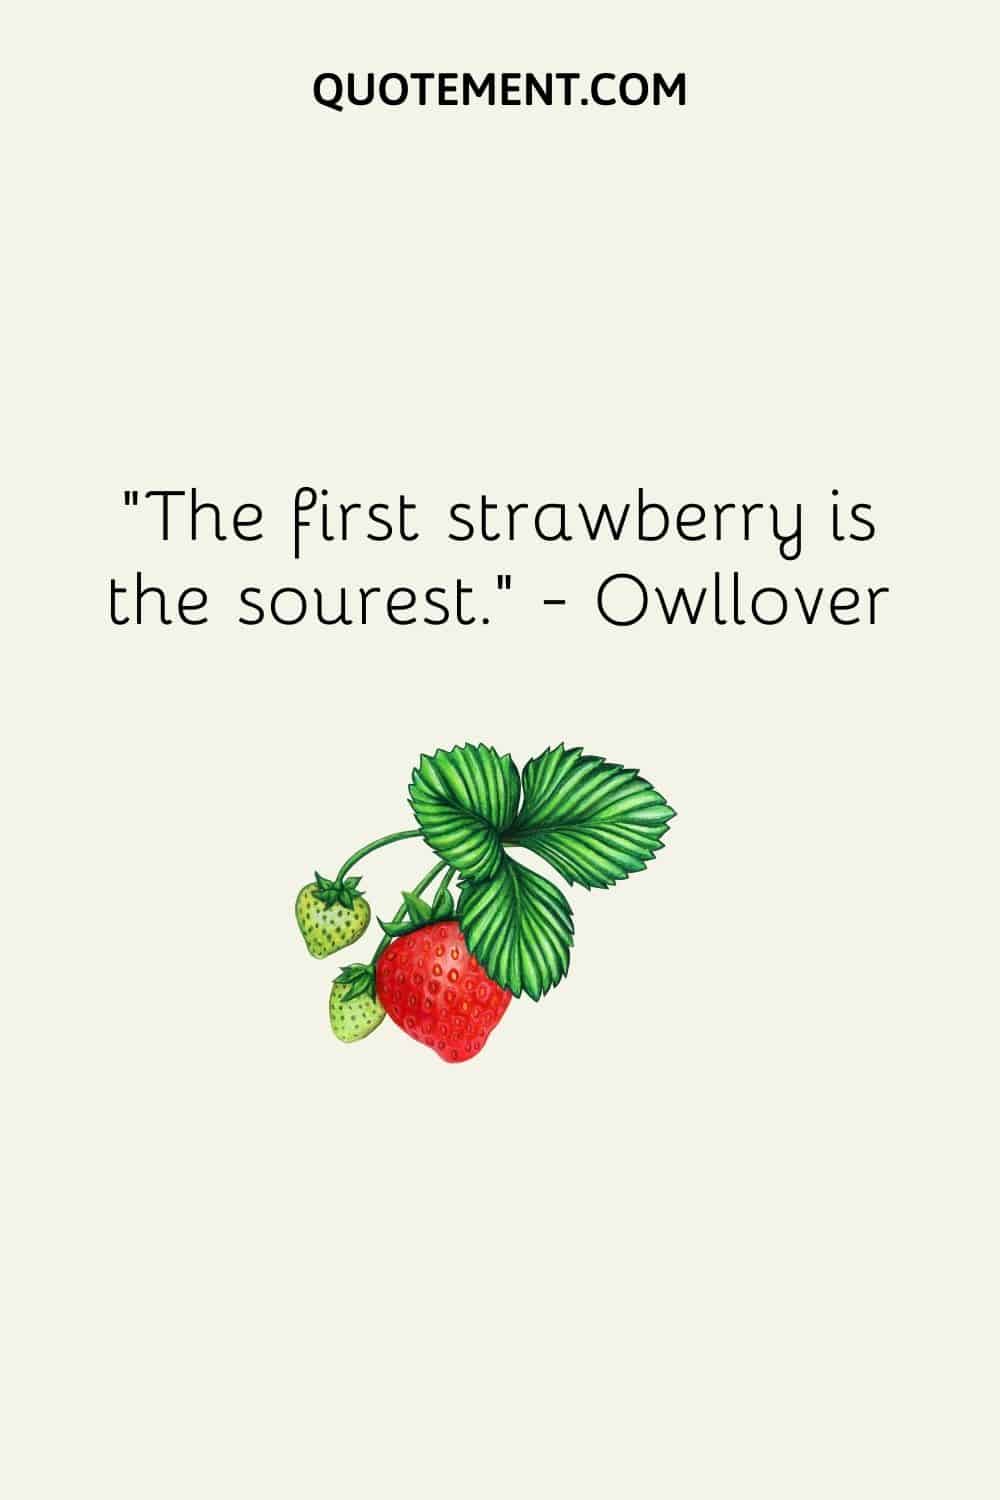 La primera fresa es la más dulce